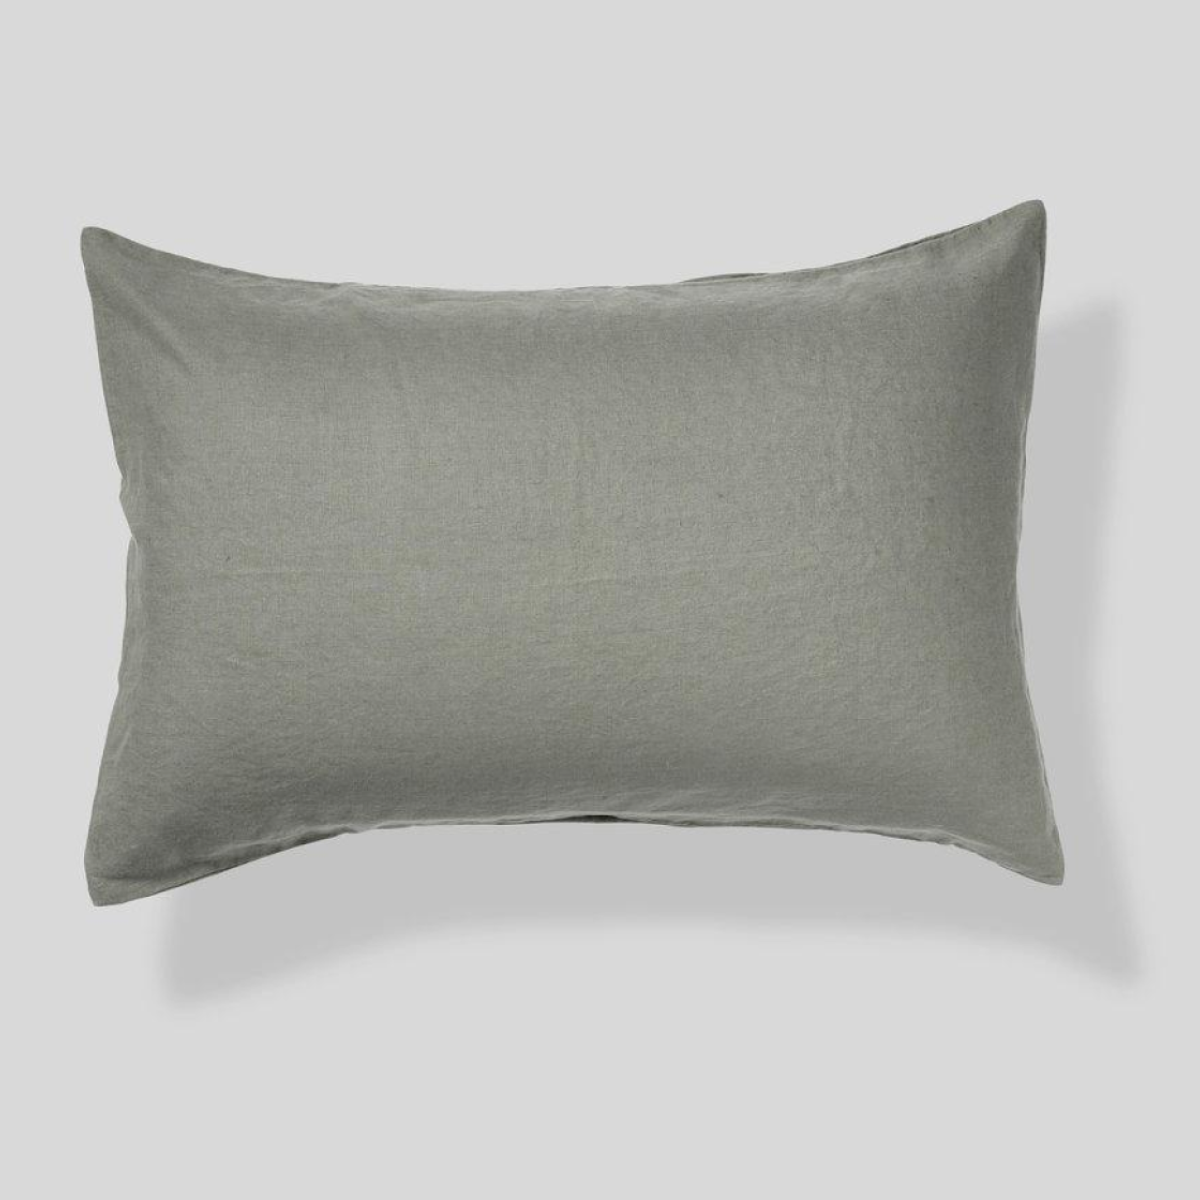 100% Linen Pillowslip Set in Khaki